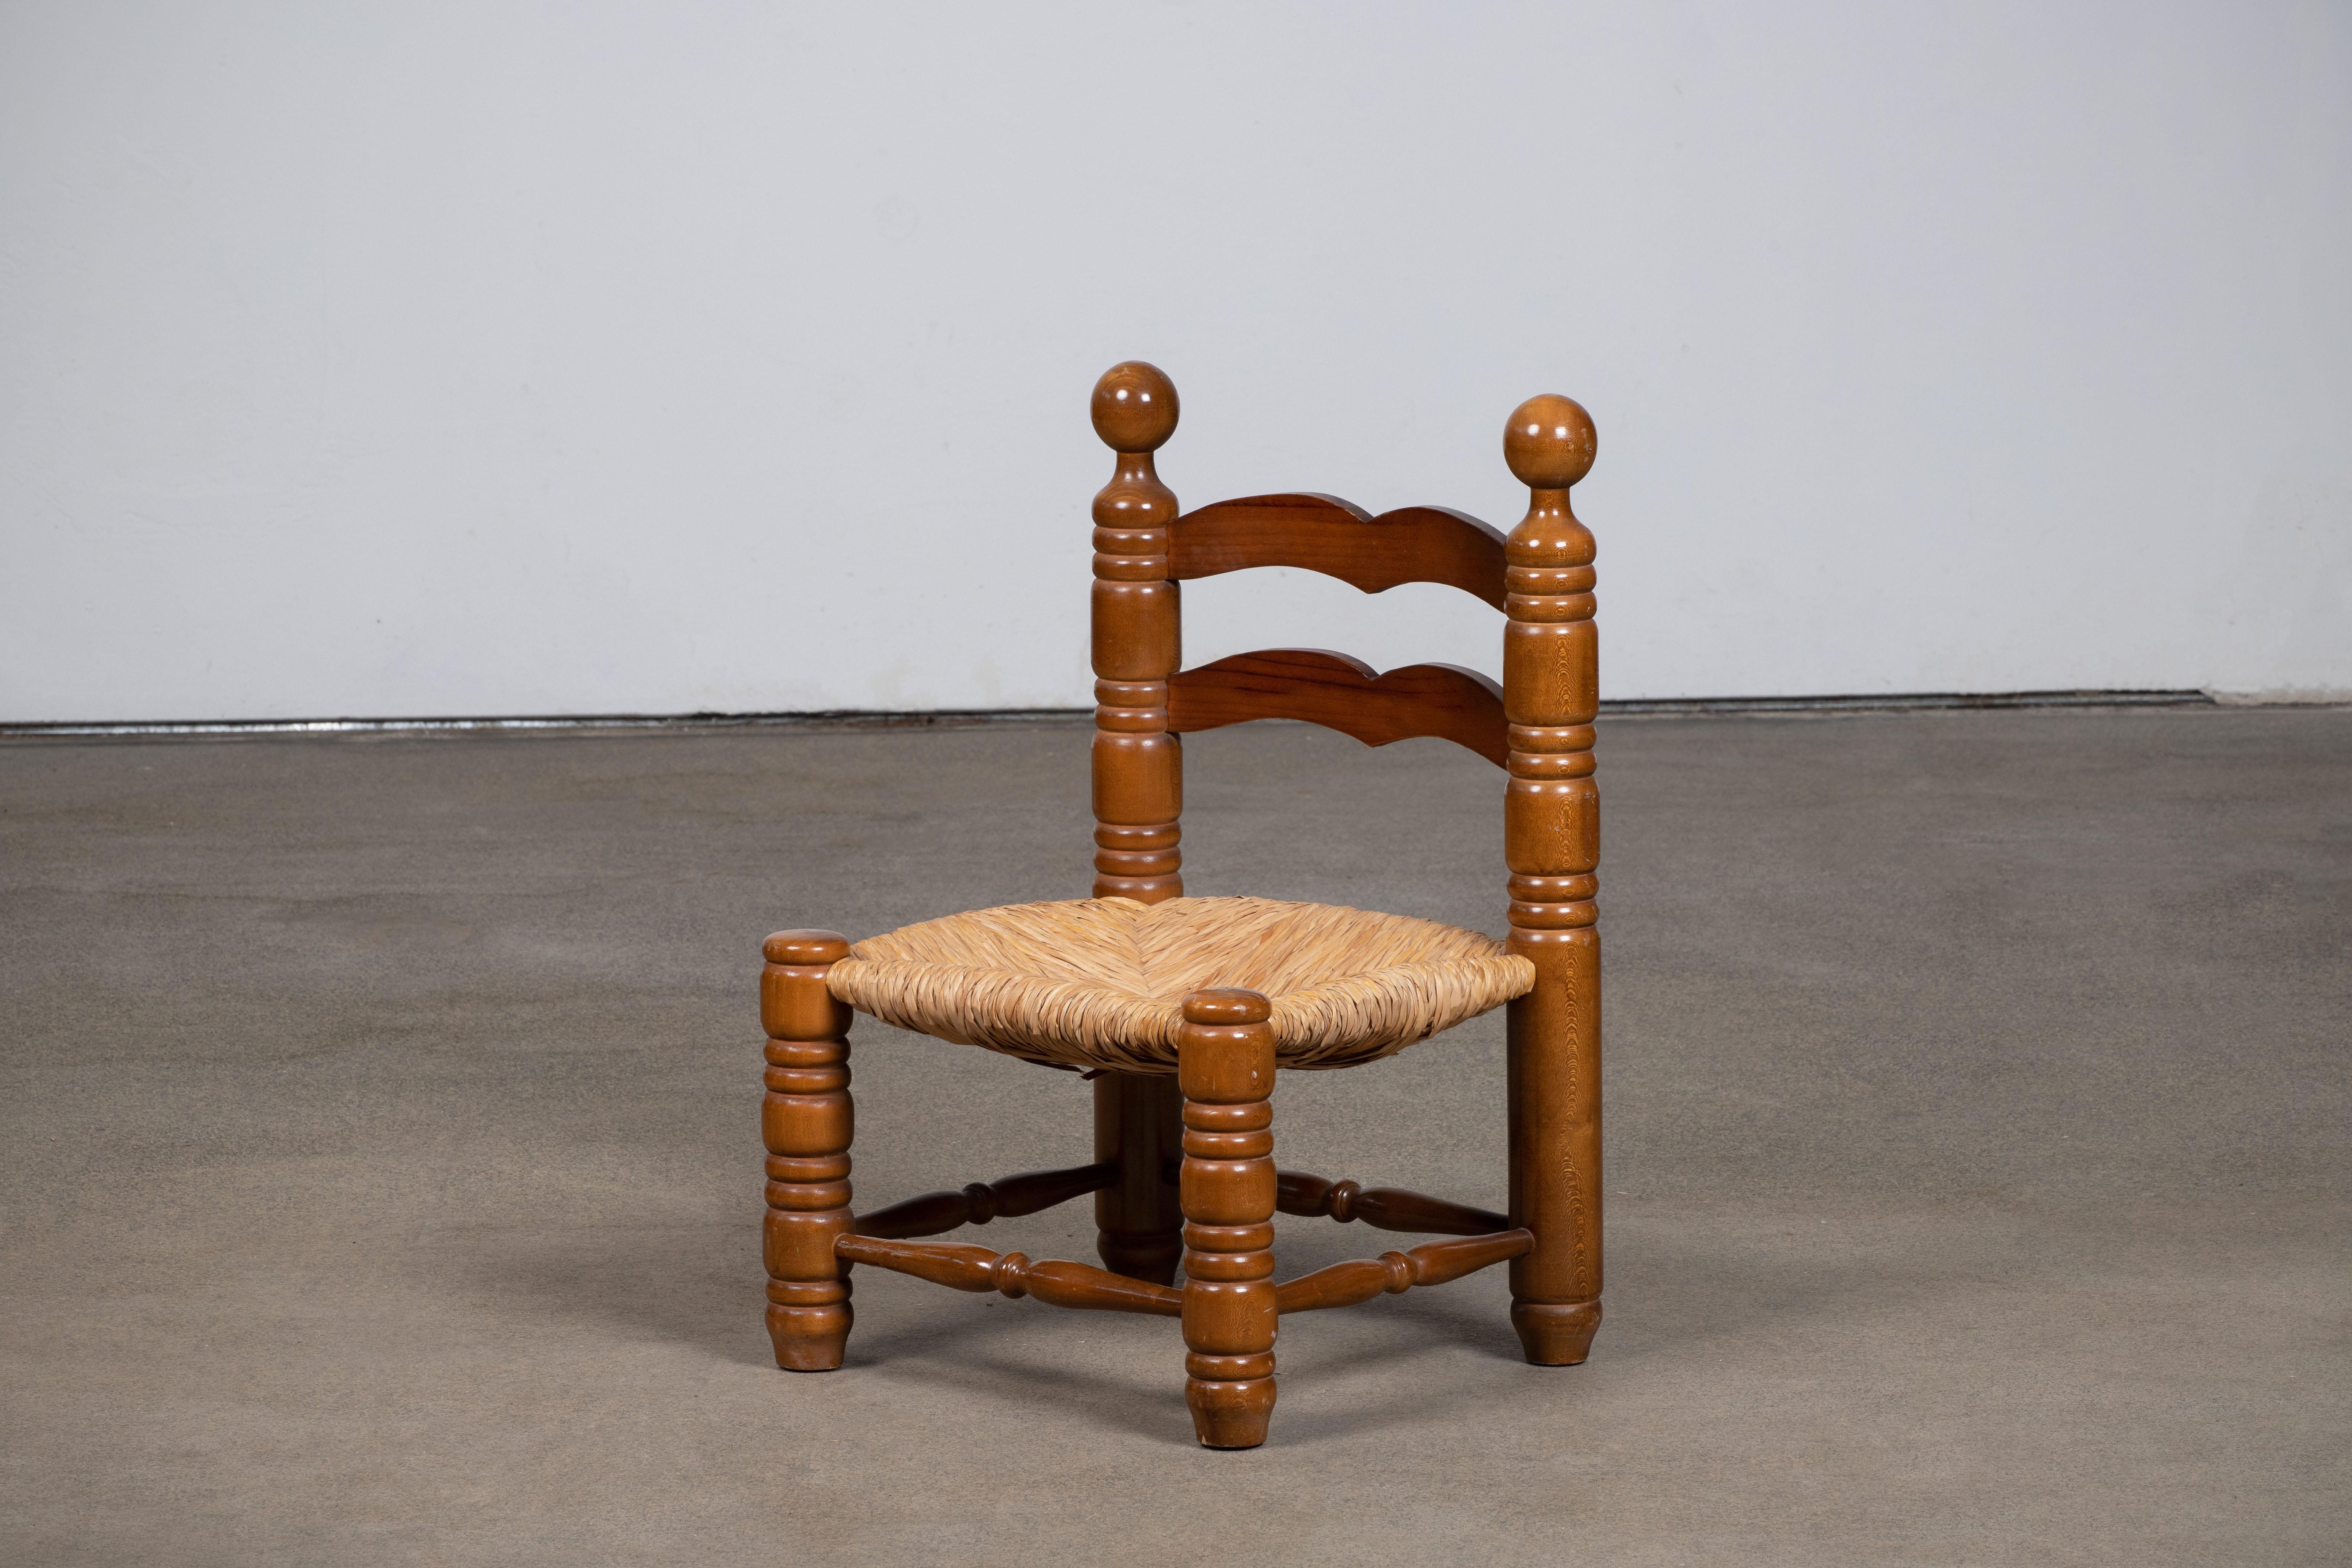 Niedriger Stuhl aus Holz und Stroh, der Charles Dudouyt zugeschrieben wird. 
Charles Dudouyt, eine der wichtigsten Persönlichkeiten des französischen Designs zu Beginn des 20. Jahrhunderts, hat die französische Designästhetik von einem ausgefeilten